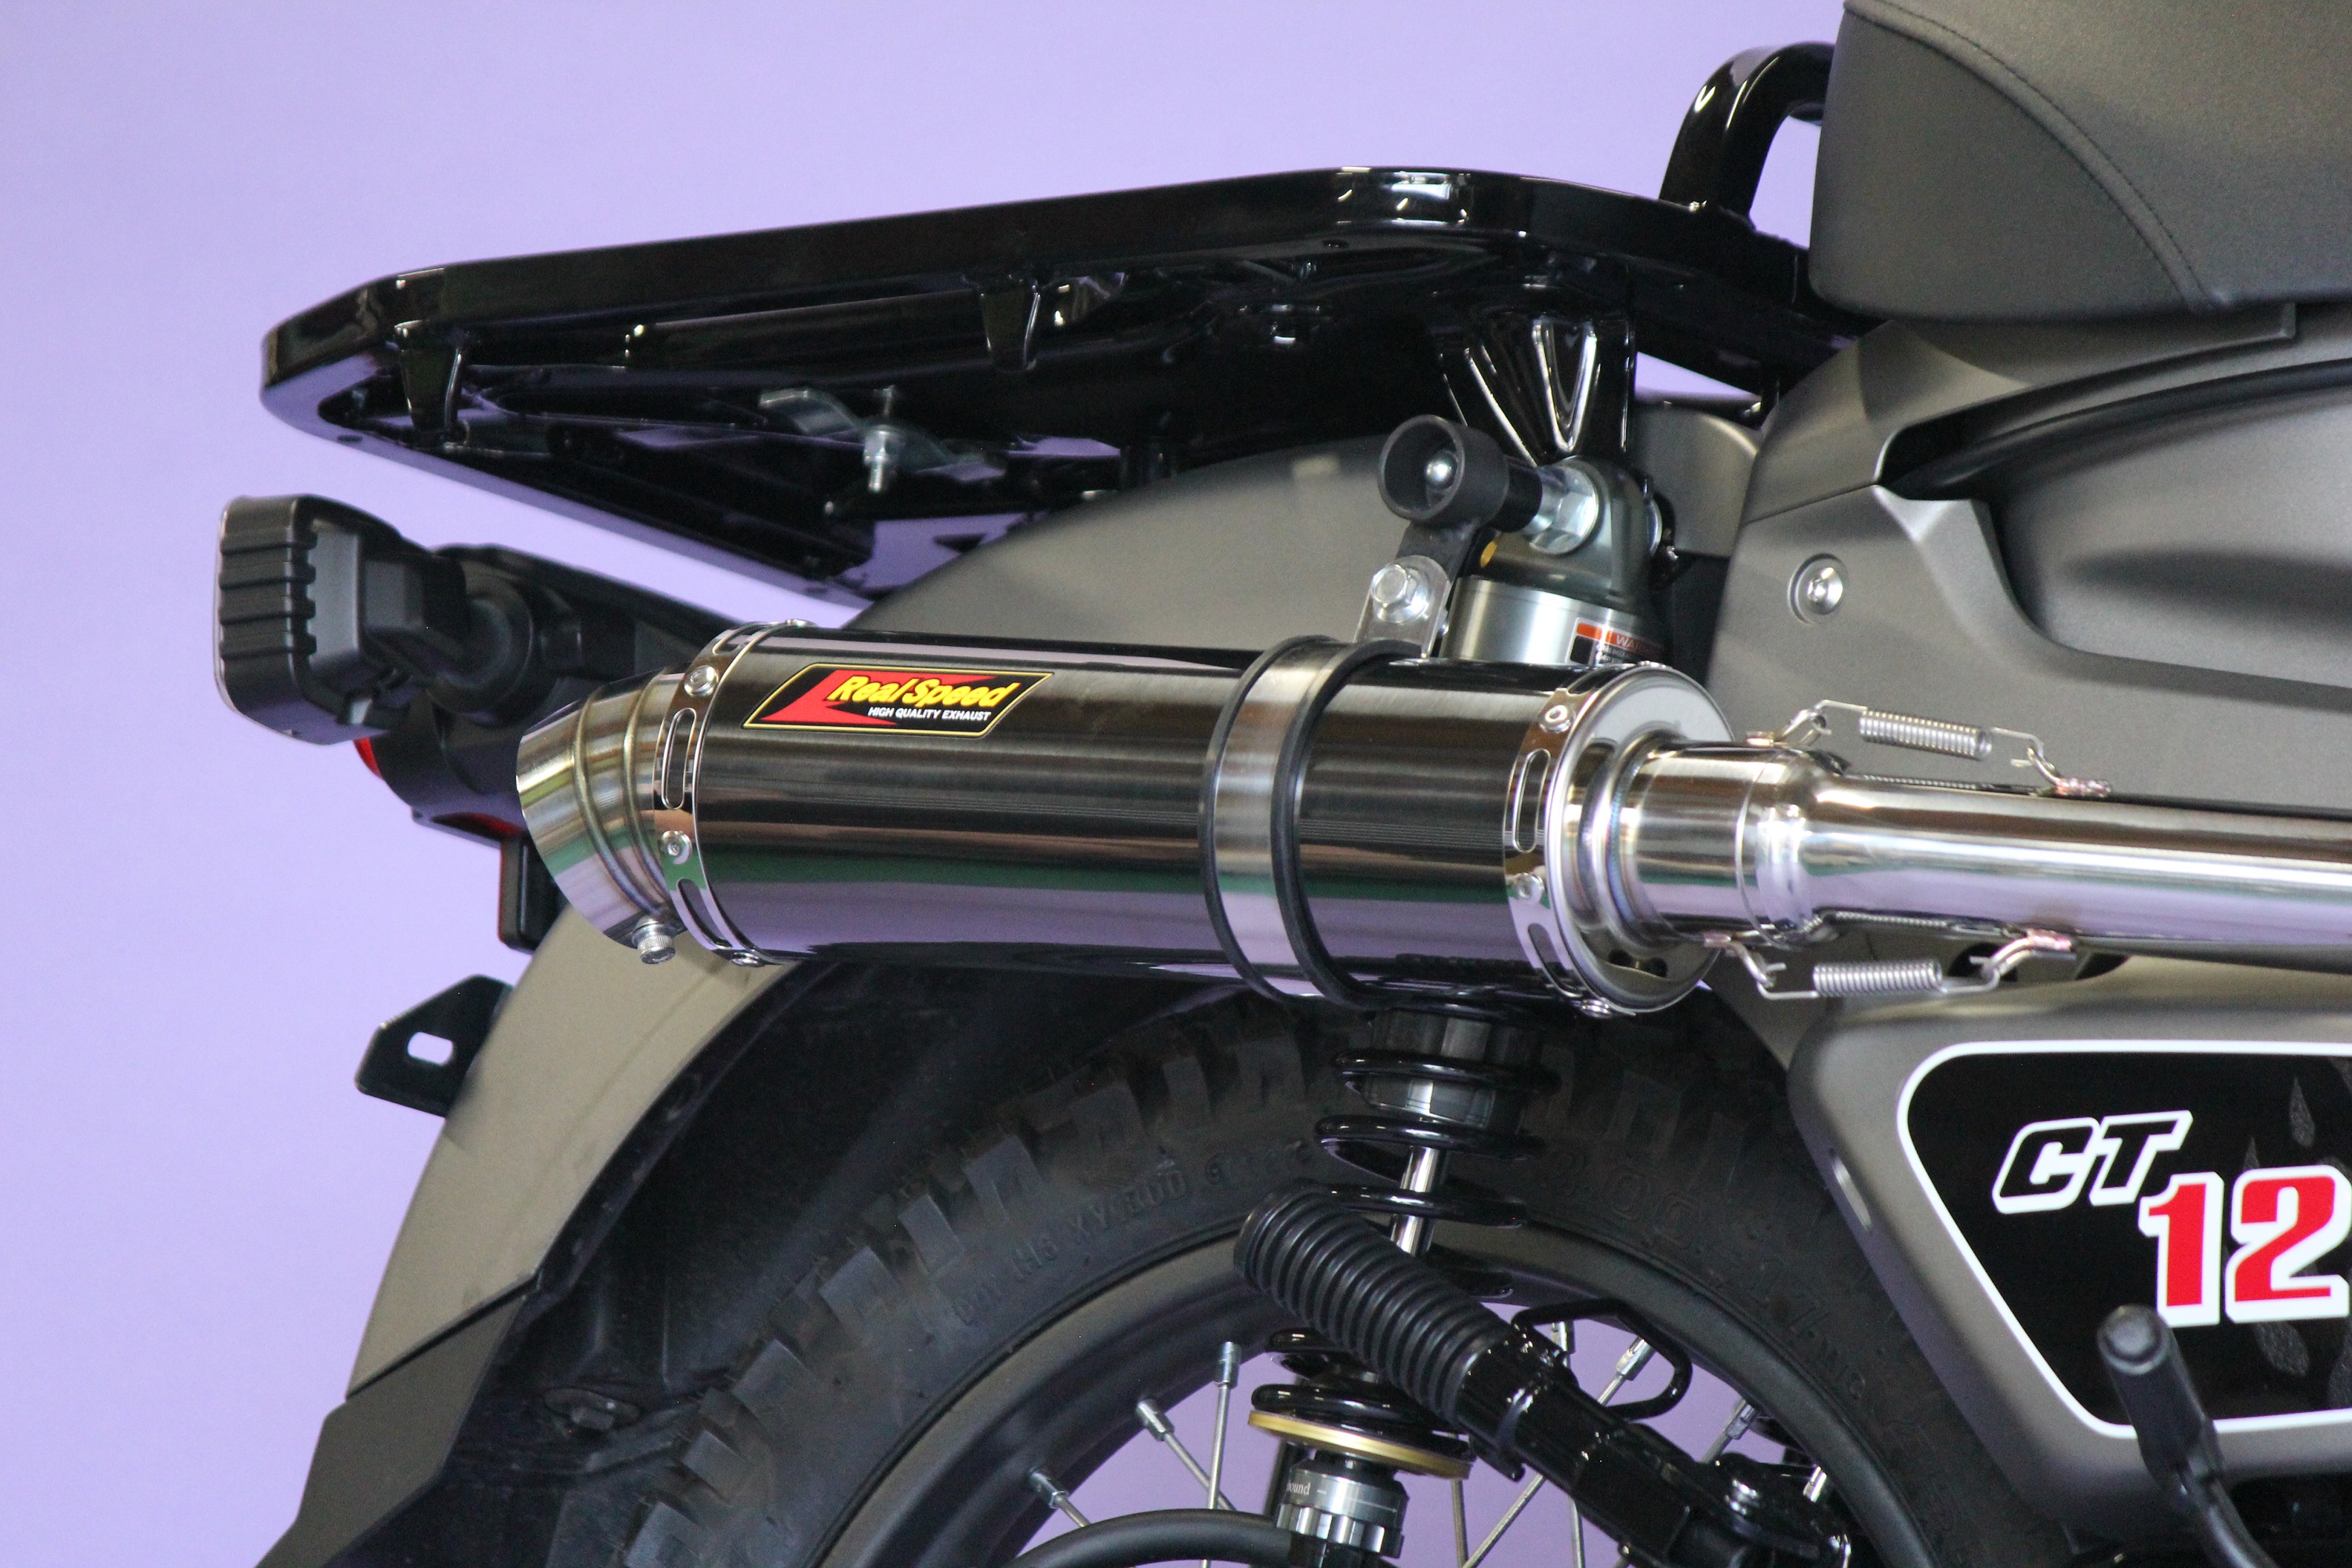 [ последняя модель соответствует ] Hunter Cub мотоцикл muffler CT125 8BJ-JA65 2BJ-JA55 2020 год ~ Blade нержавеющая сталь черный цвет muffler Honda custom детали 